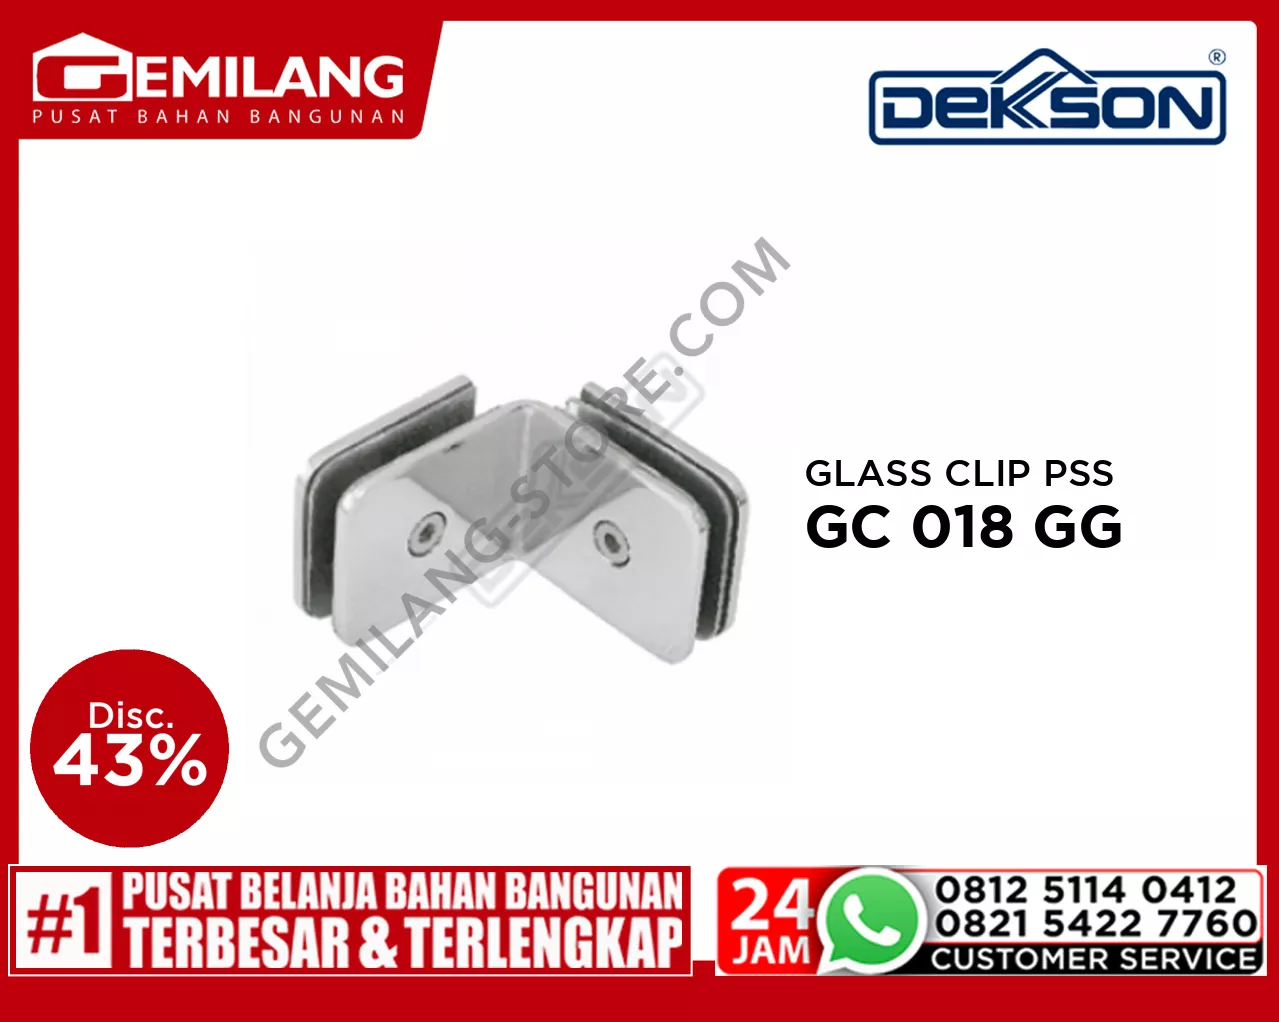 DEKKSON GLASS CLIP GC 018 GG PSS